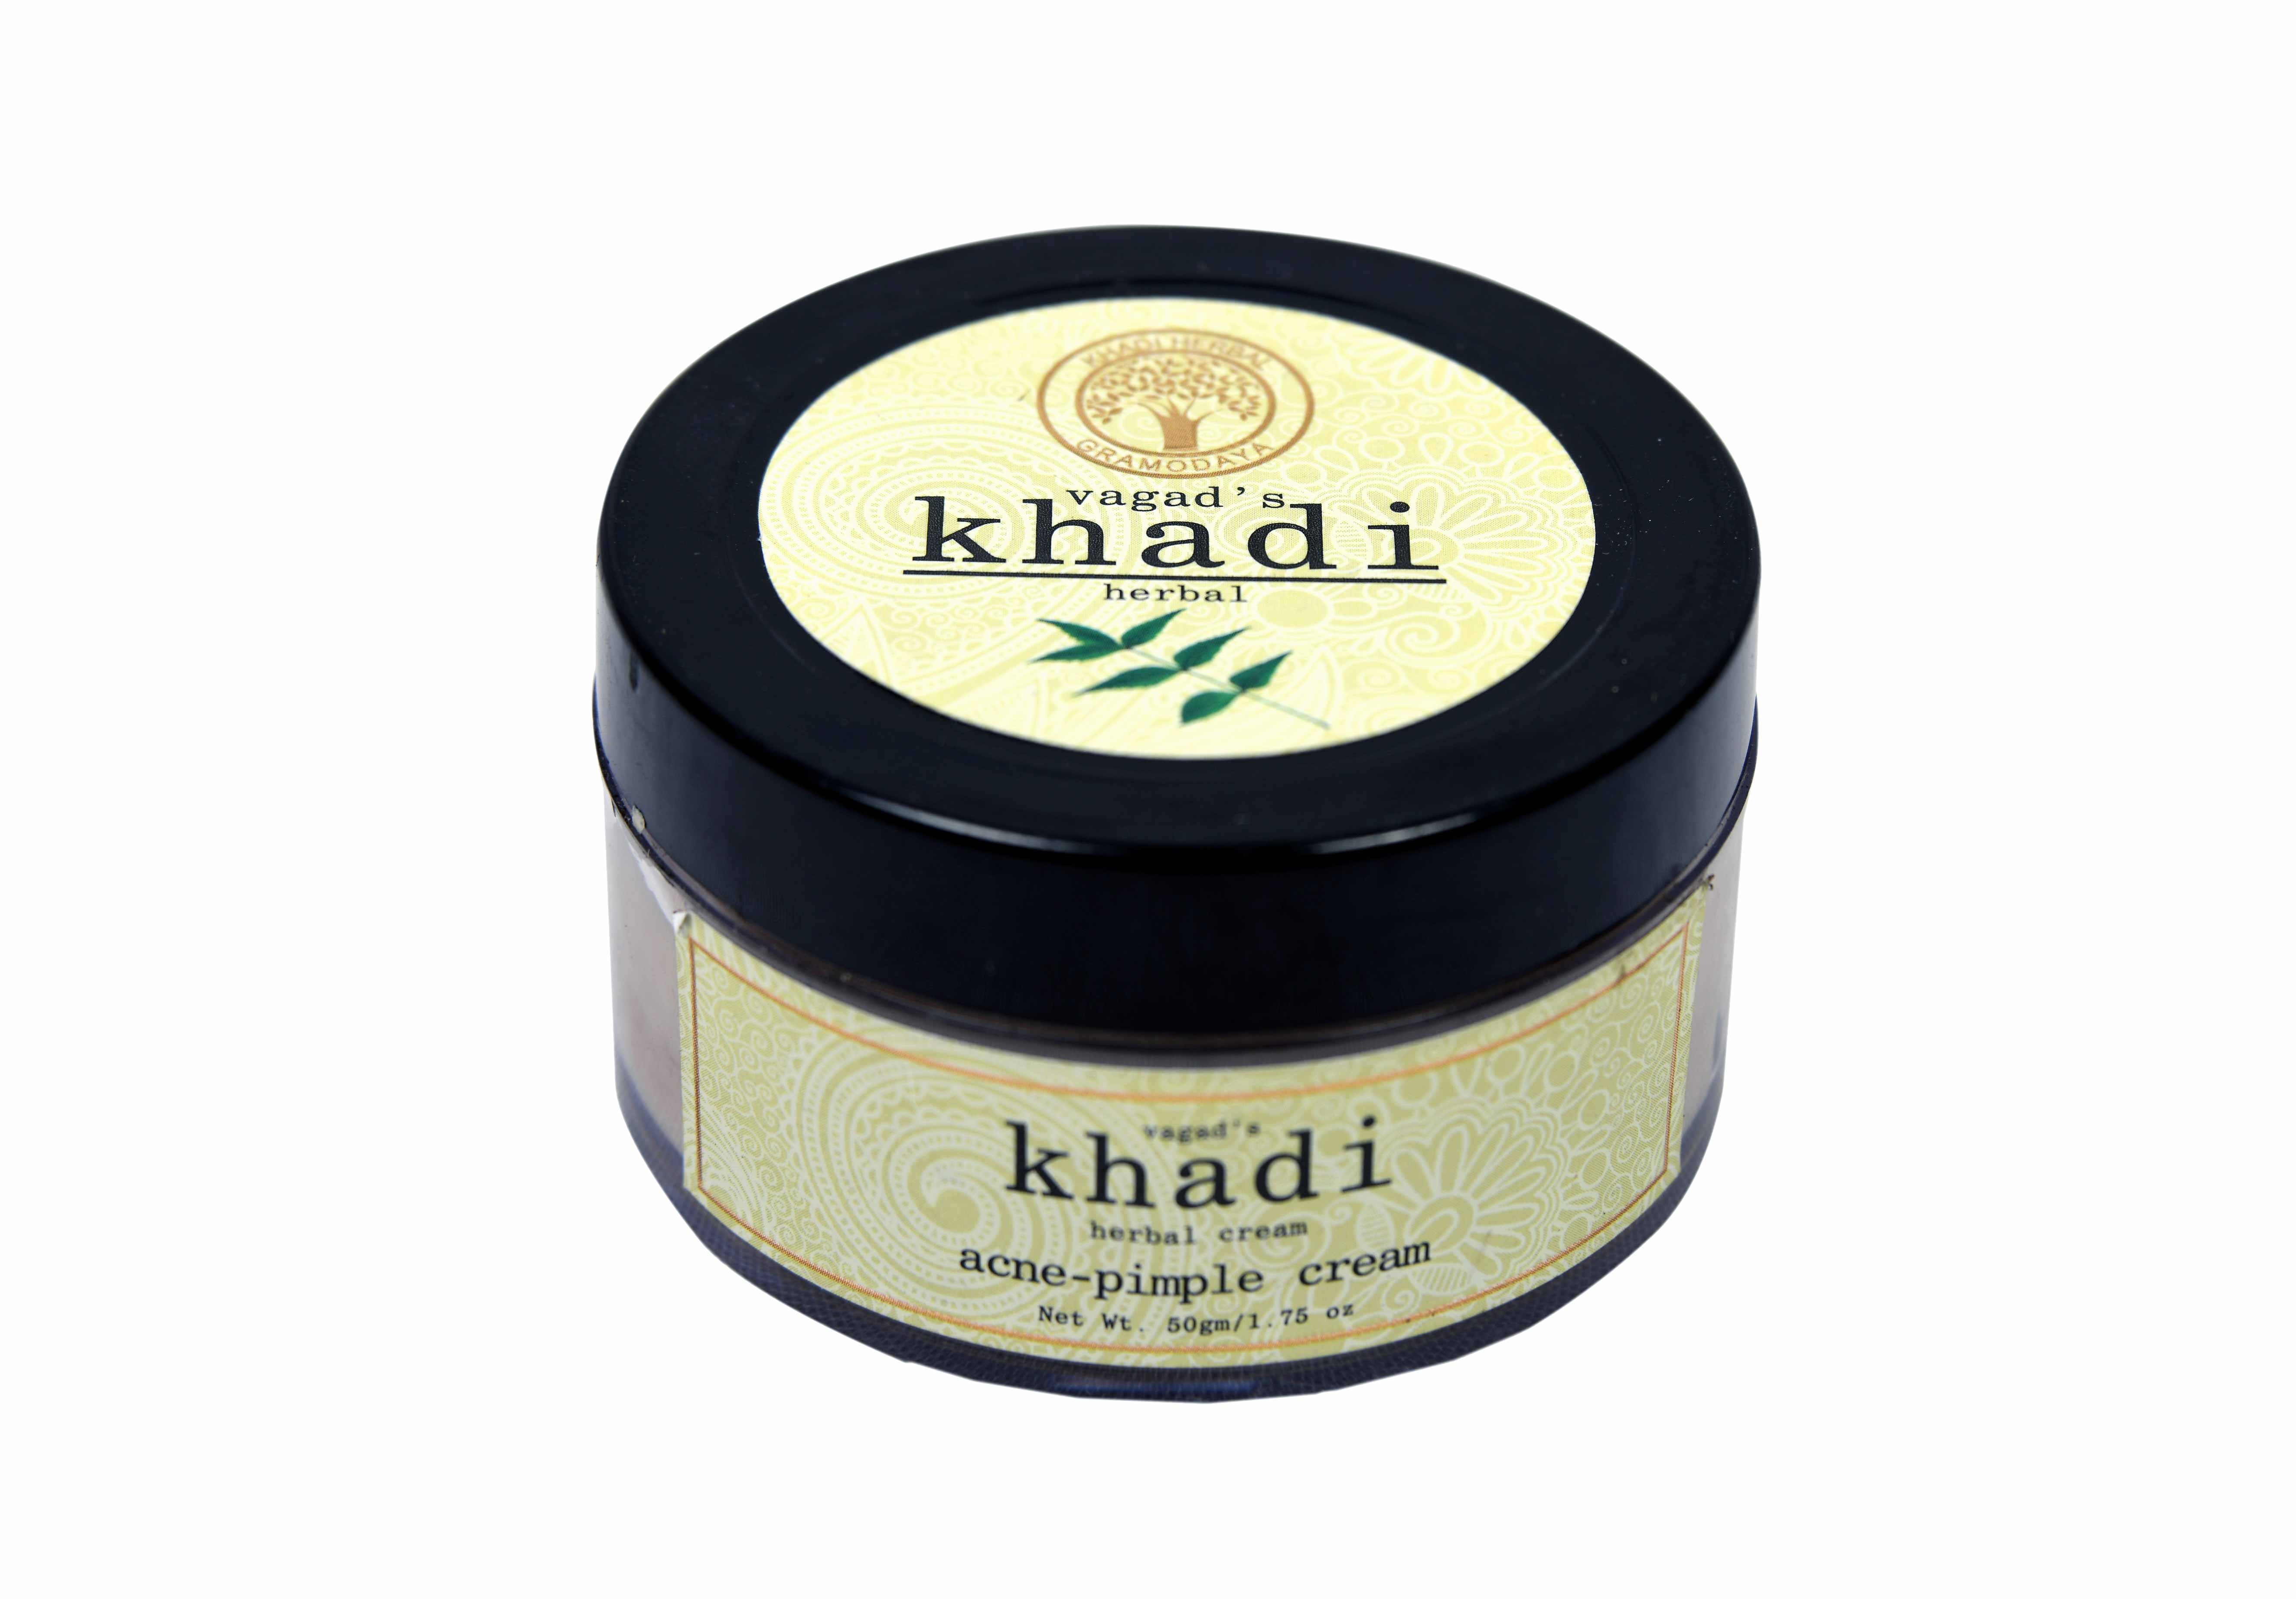 Vagad's Khadi Acne Pimple Cream